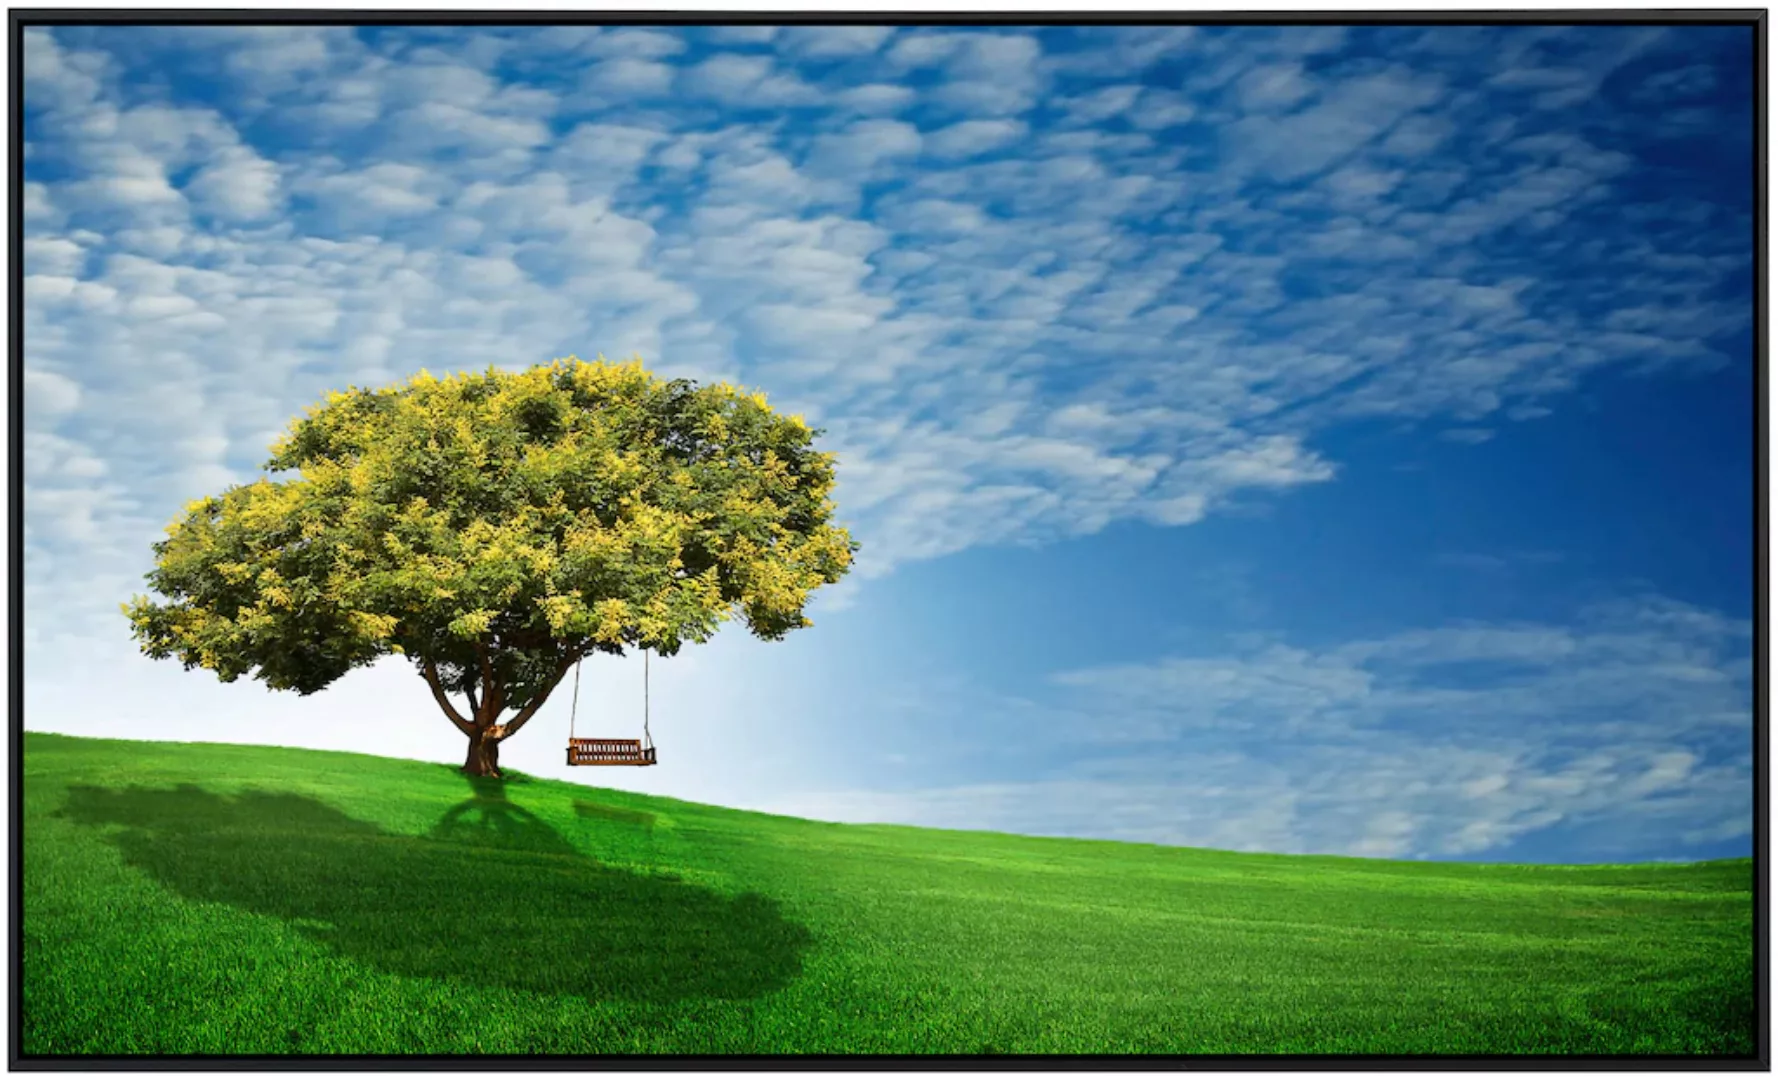 Papermoon Infrarotheizung »Goldener Regenbaum« günstig online kaufen